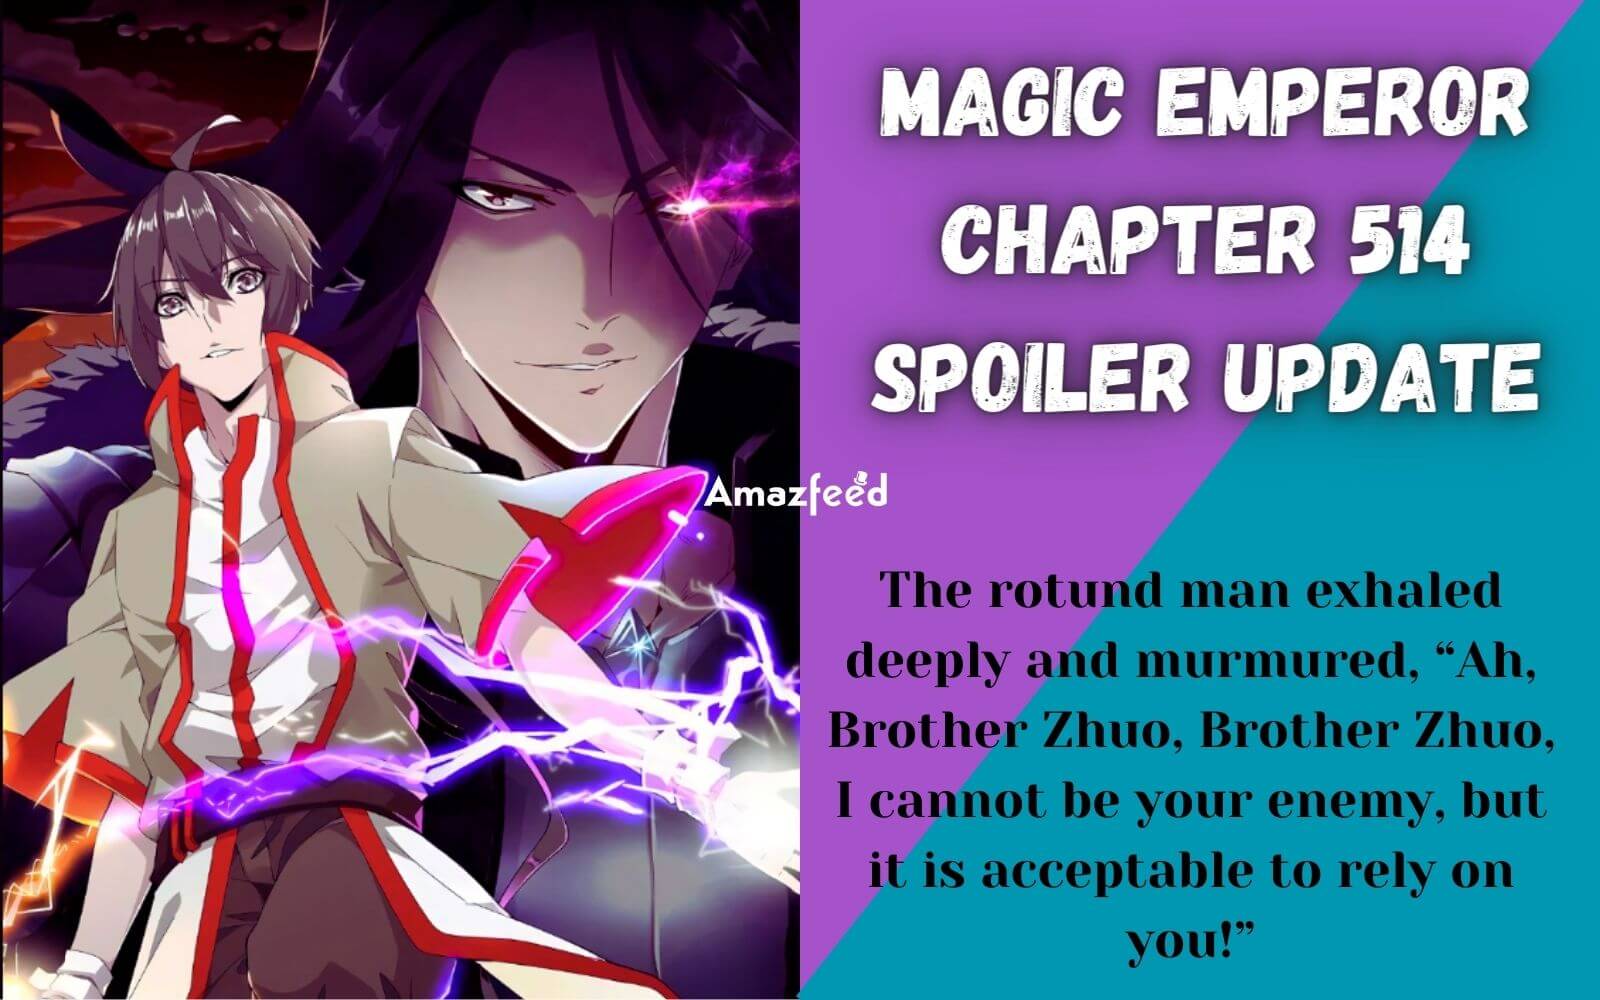 Magic Emperor Chapter 514 Spoiler Alert